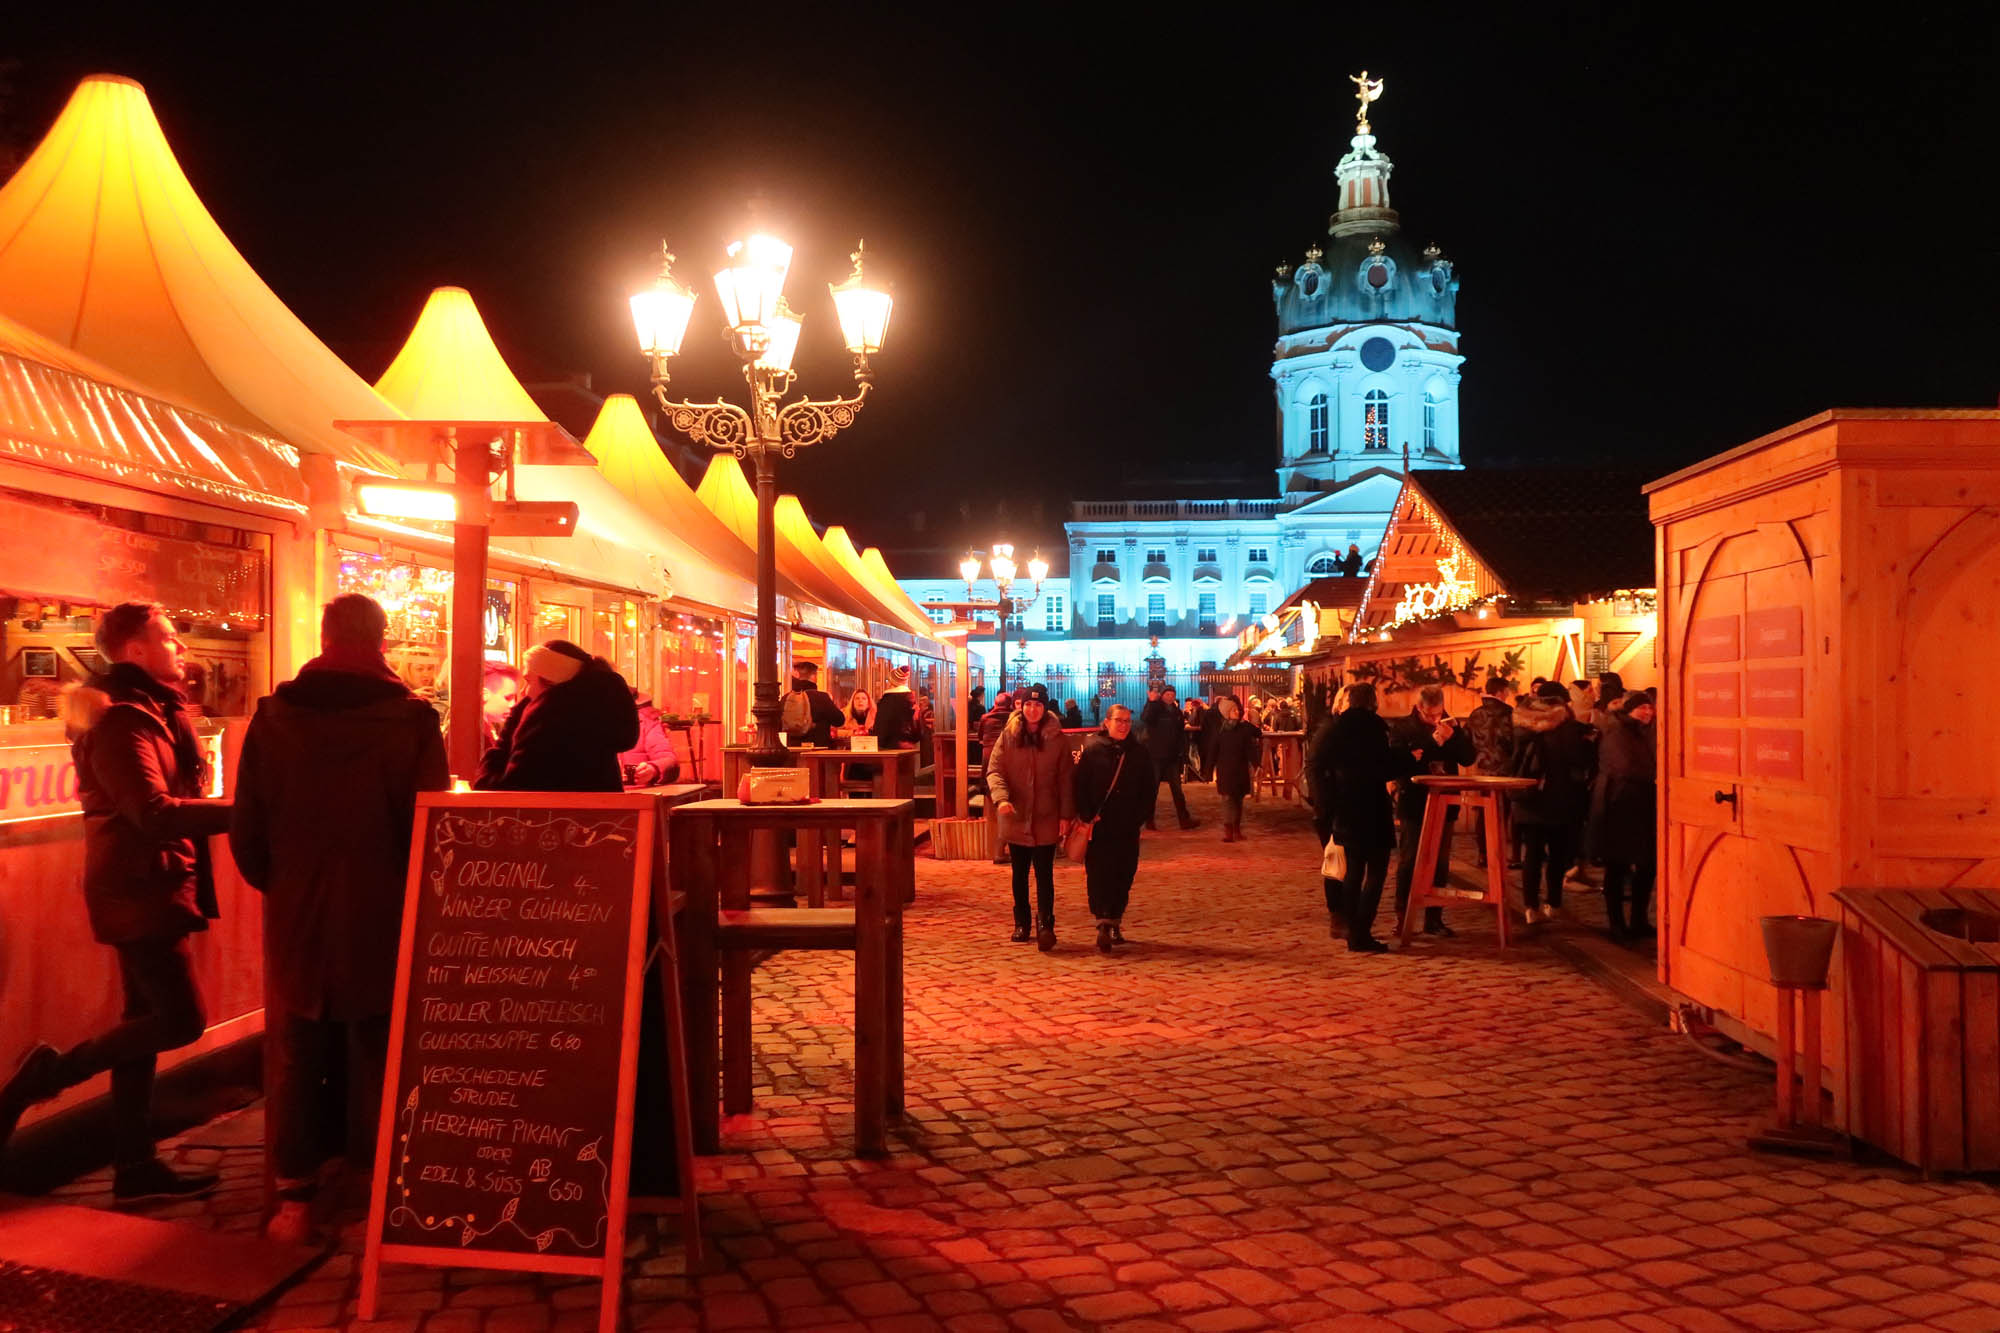 ベルリンのクリスマスマーケット シャルロッテンブルク宮殿前のクリスマスマーケットは年の開催は中止に ドイツ通